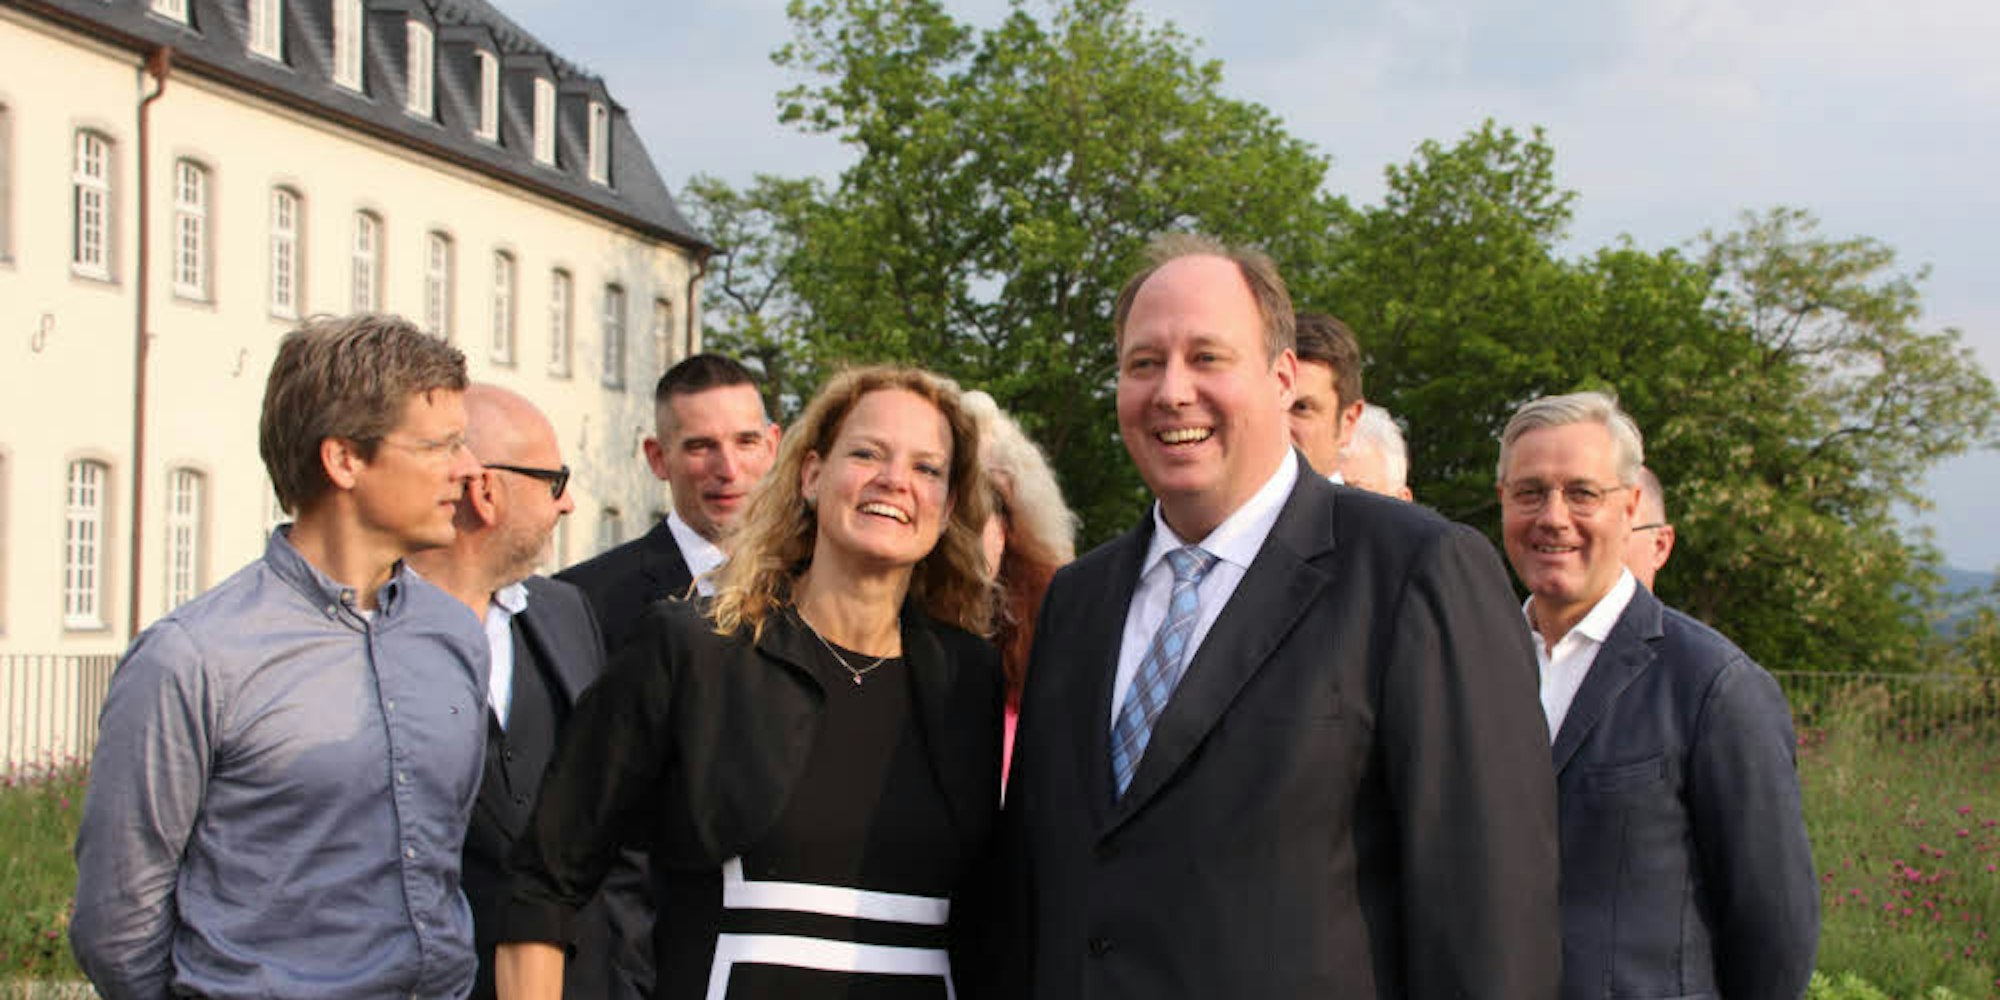 Kanzleramtschef Dr. Helge Braun (2.v.r.) besuchte die Mittelstands- und Wirtschaftsvereinigung der CDU im Kreis. Unter den Gästen war auch Bürgermeisterkandidatin Ulla Thiel.